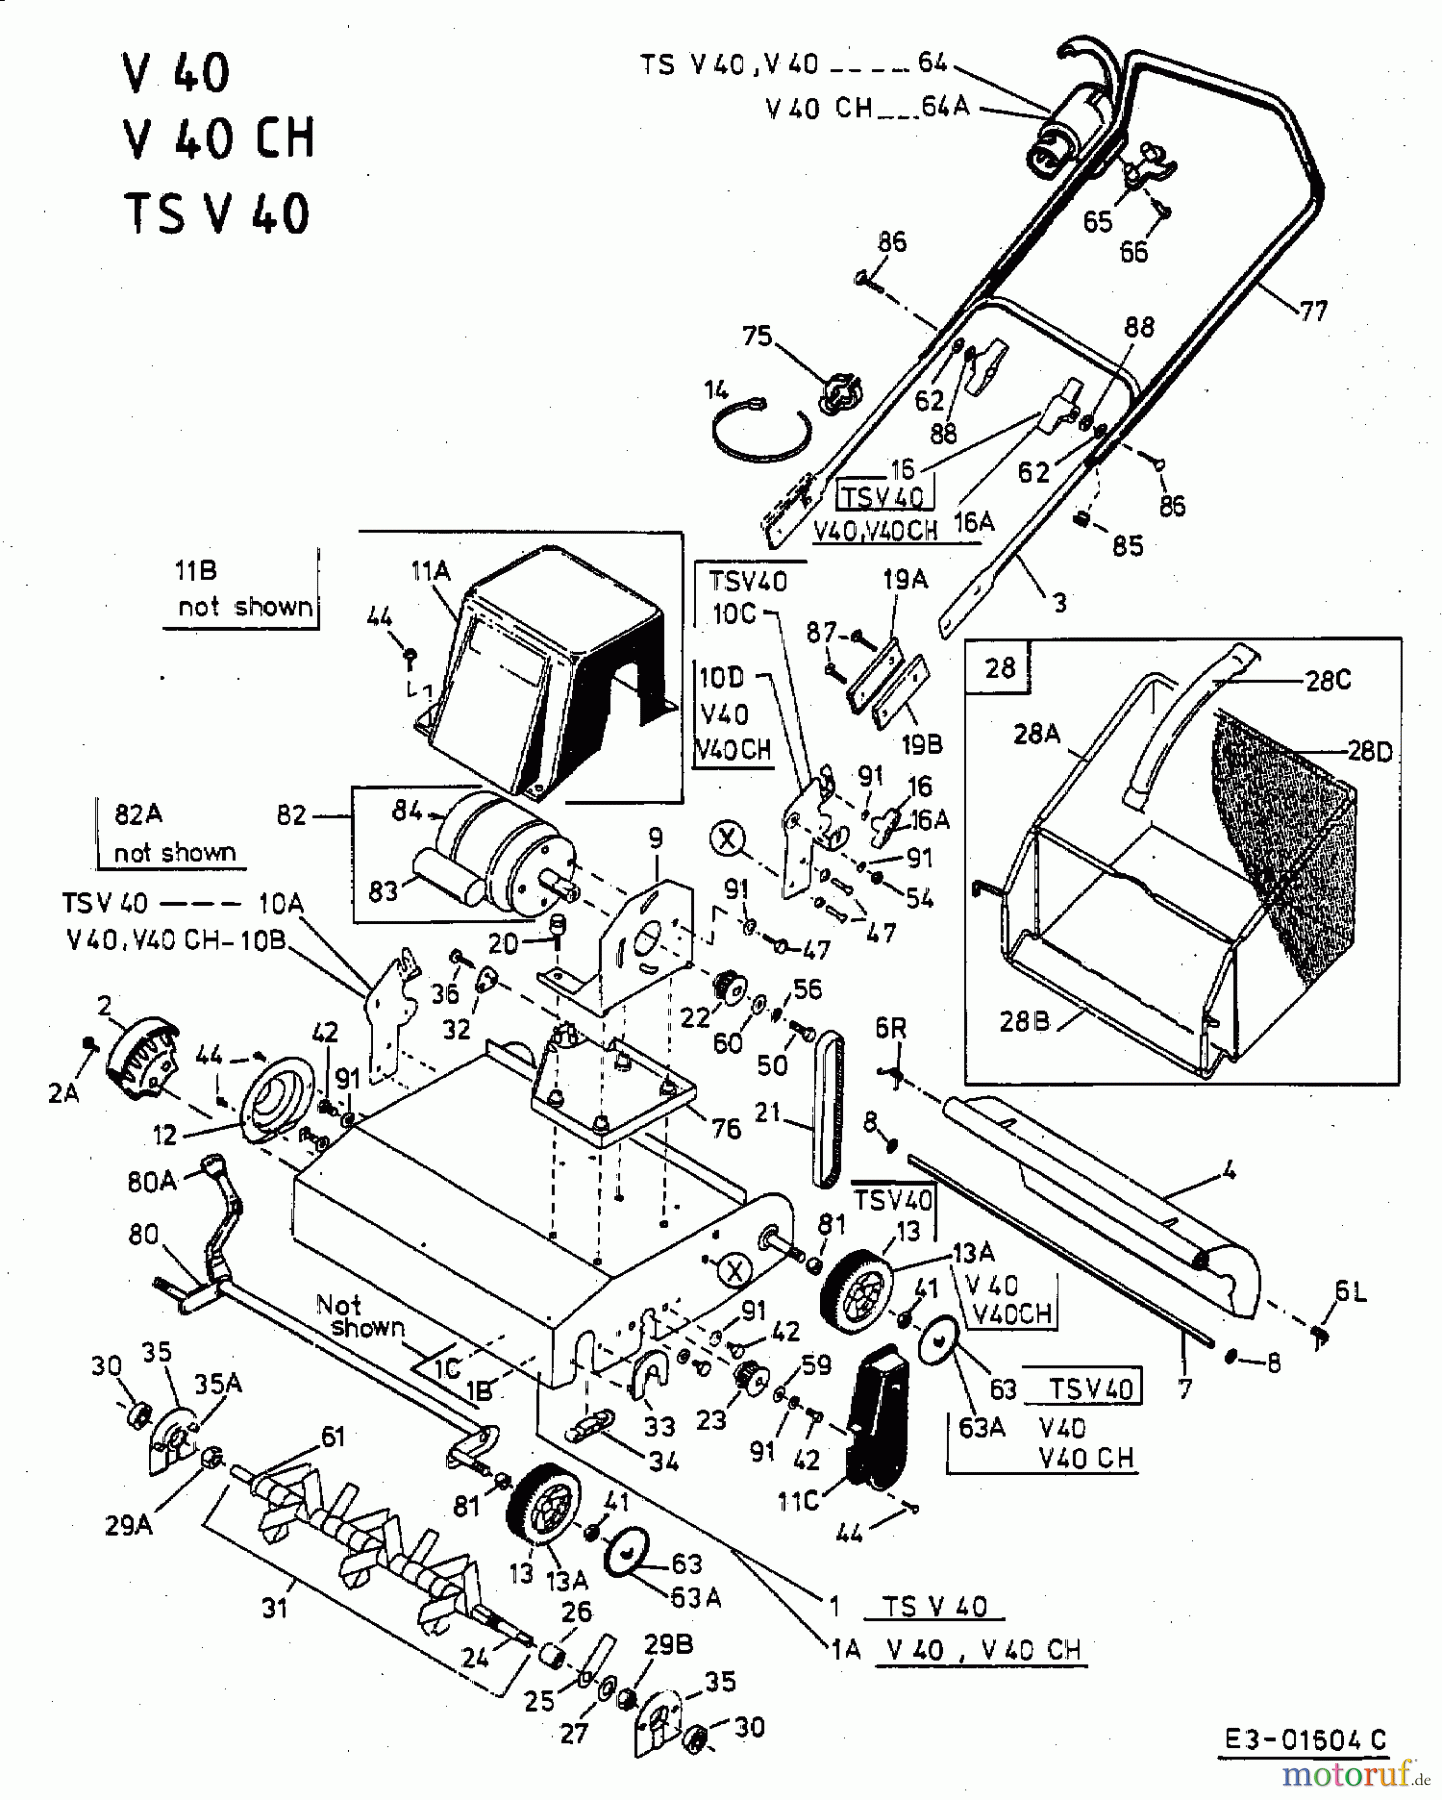  MTD Elektrovertikutierer V 40 16BEM0G-678  (2003) Grundgerät